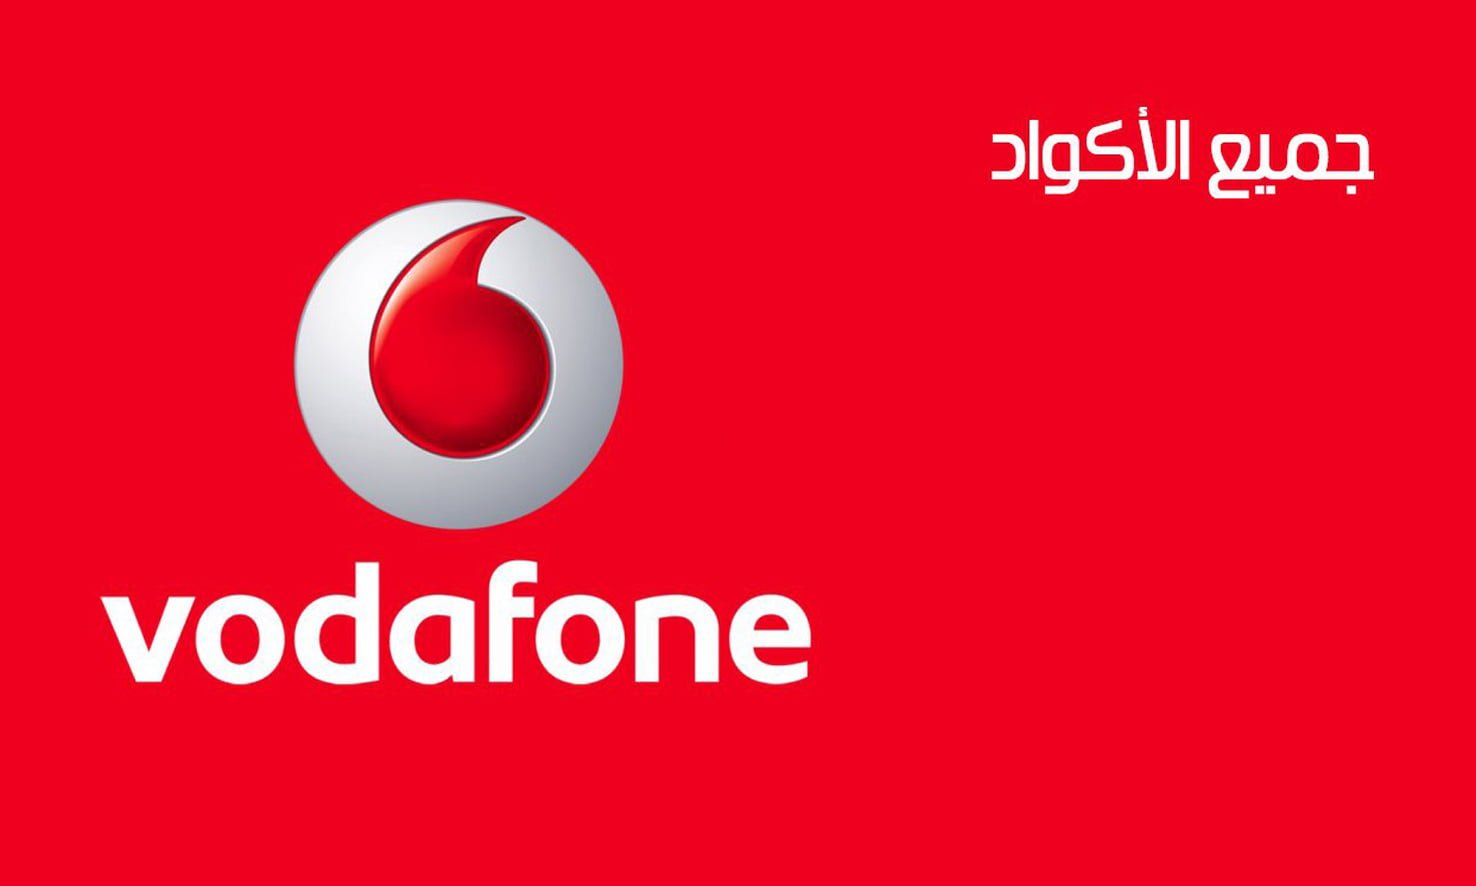 جميع أكواد Vodafone وخدمات فودافون كاش سحب وايداع و الأرقام المختصرة